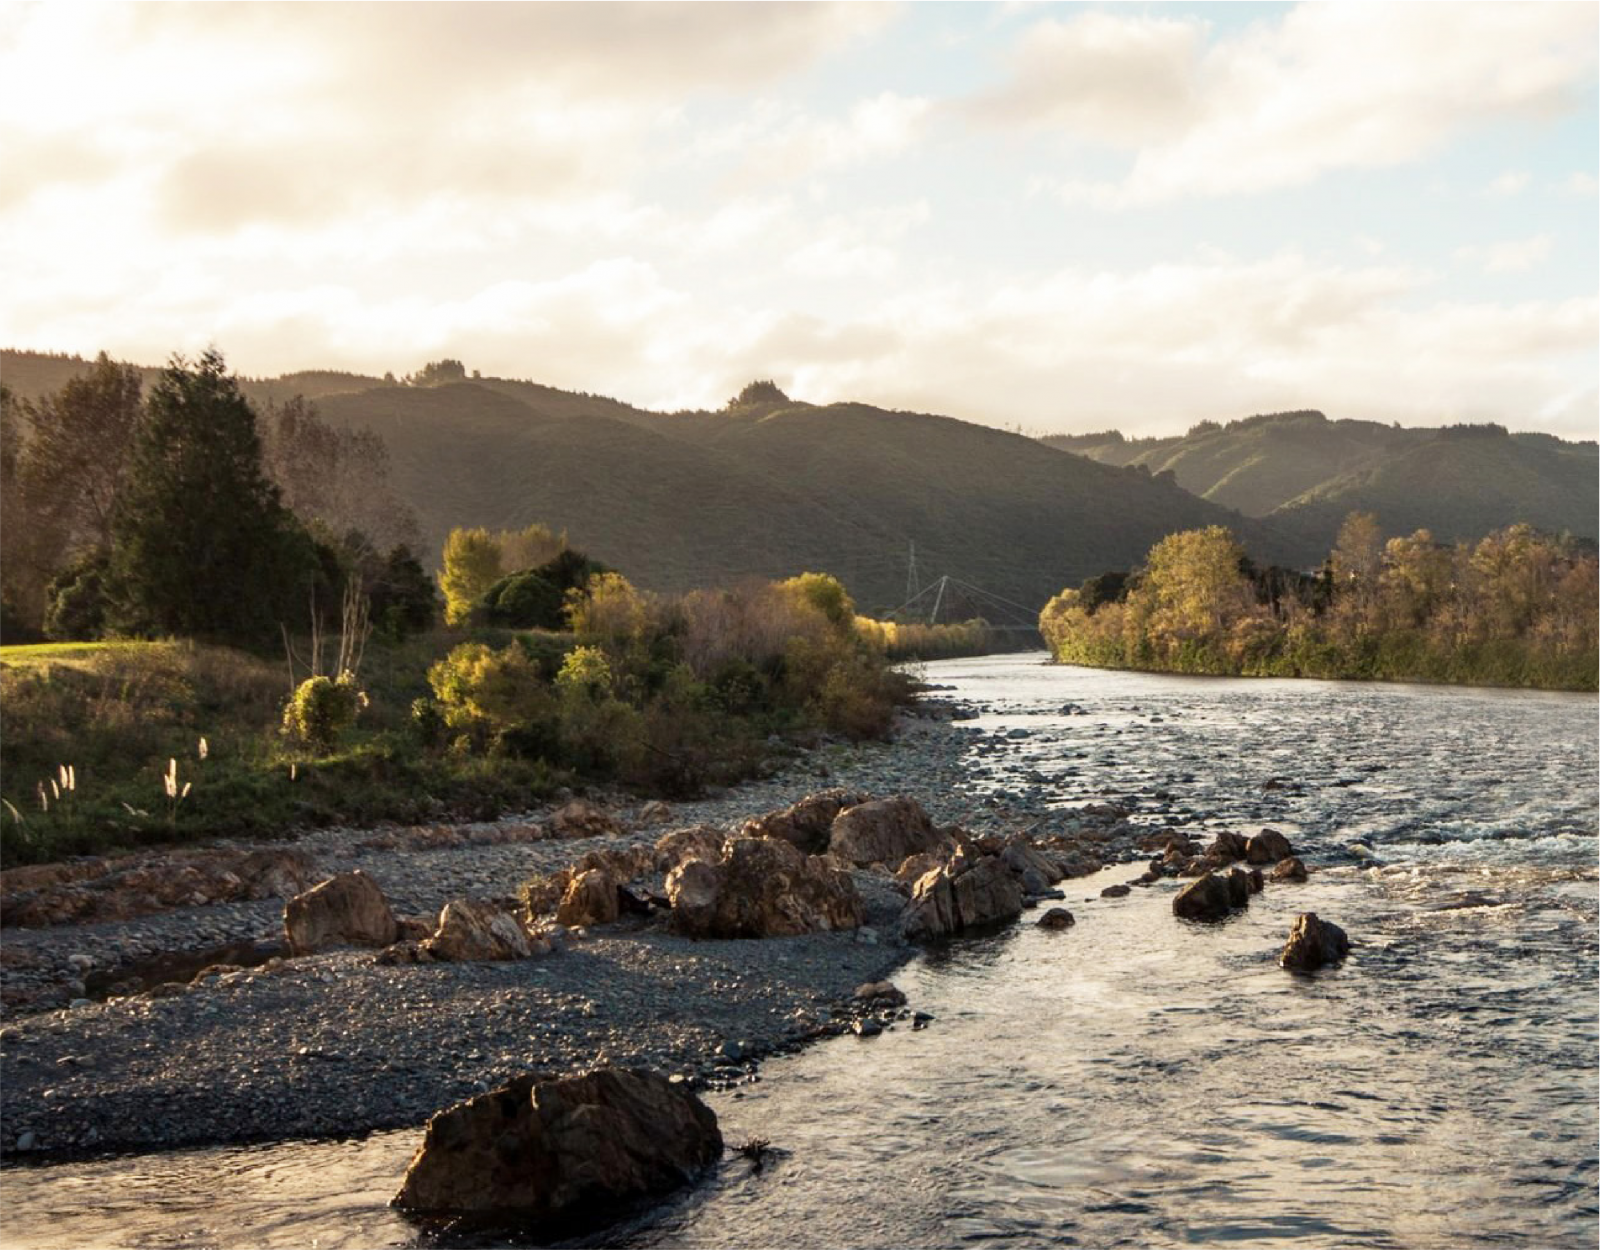 TeAwaKairangi - River Image - Clean banner image